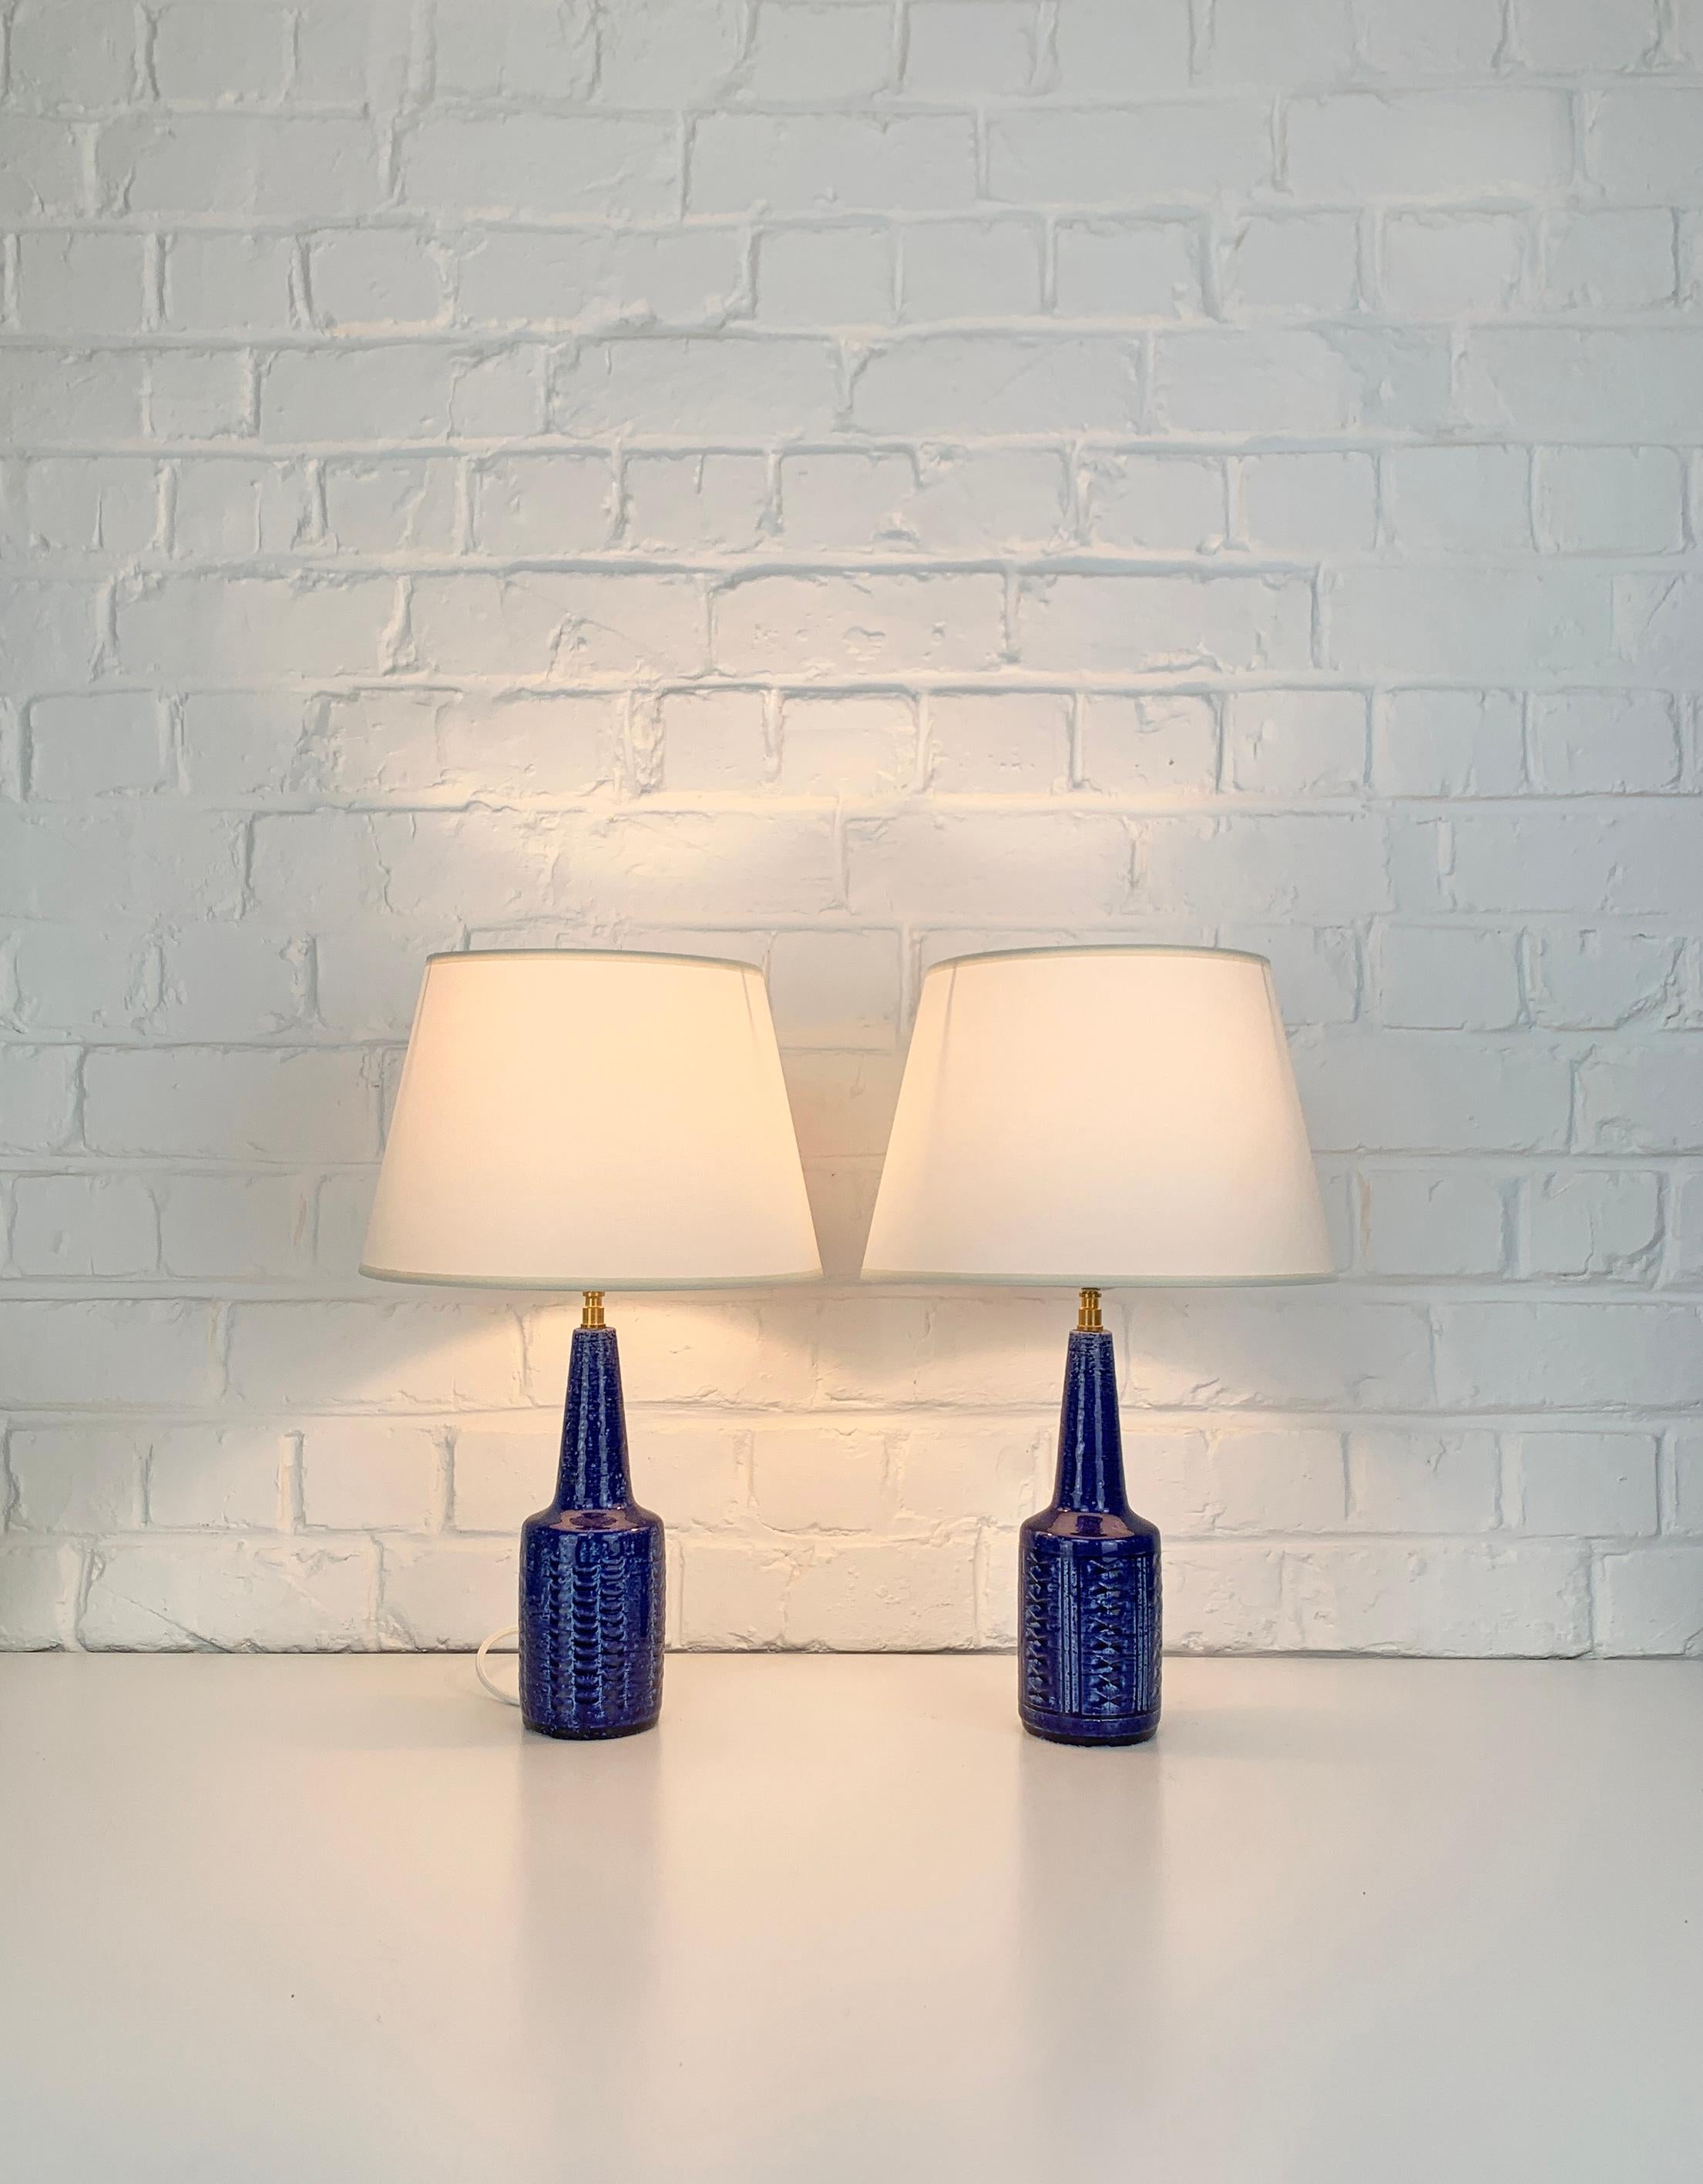 Paar kleine Steingut-Tischlampen, Modell DL29, hergestellt von Palshus (Dänemark). 

Die Lampenfüße sind mit einer blauen Glasur und einem eingeprägten Muster versehen. Der Schamotteton verleiht eine natürliche und lebendige Oberfläche. Beide sind